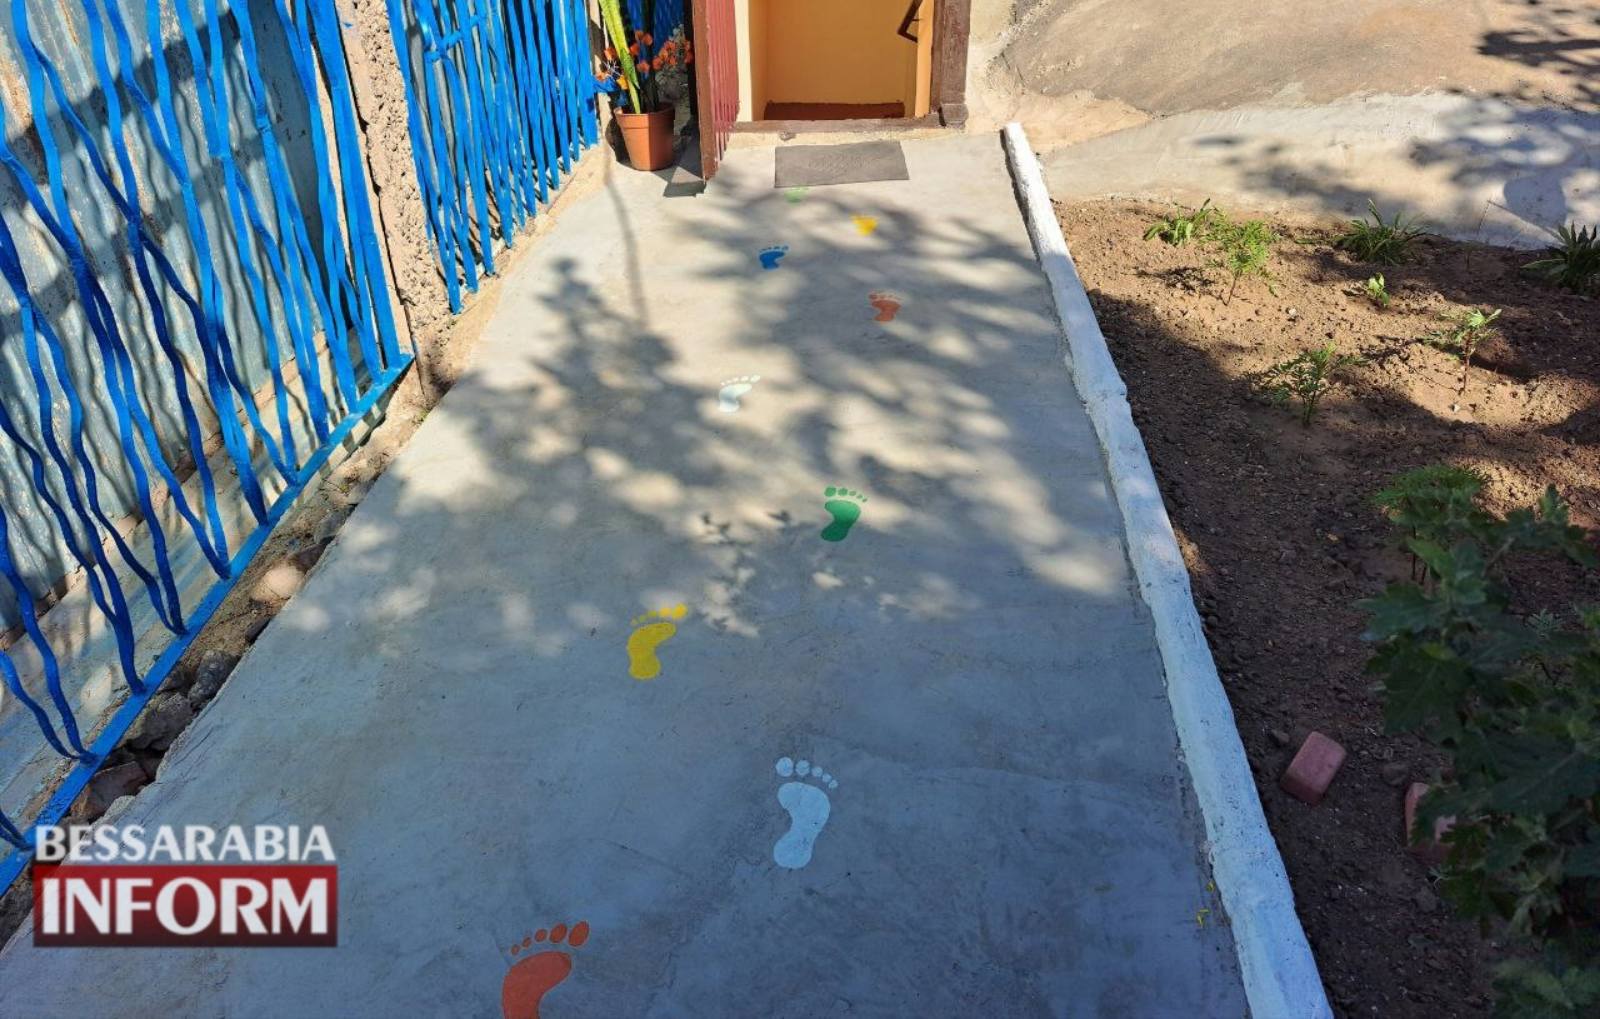 Ще один дитячий садок знову відкриває двері маленьким аккерманцям ─ подробиці відновлення роботи дошкільного закладу